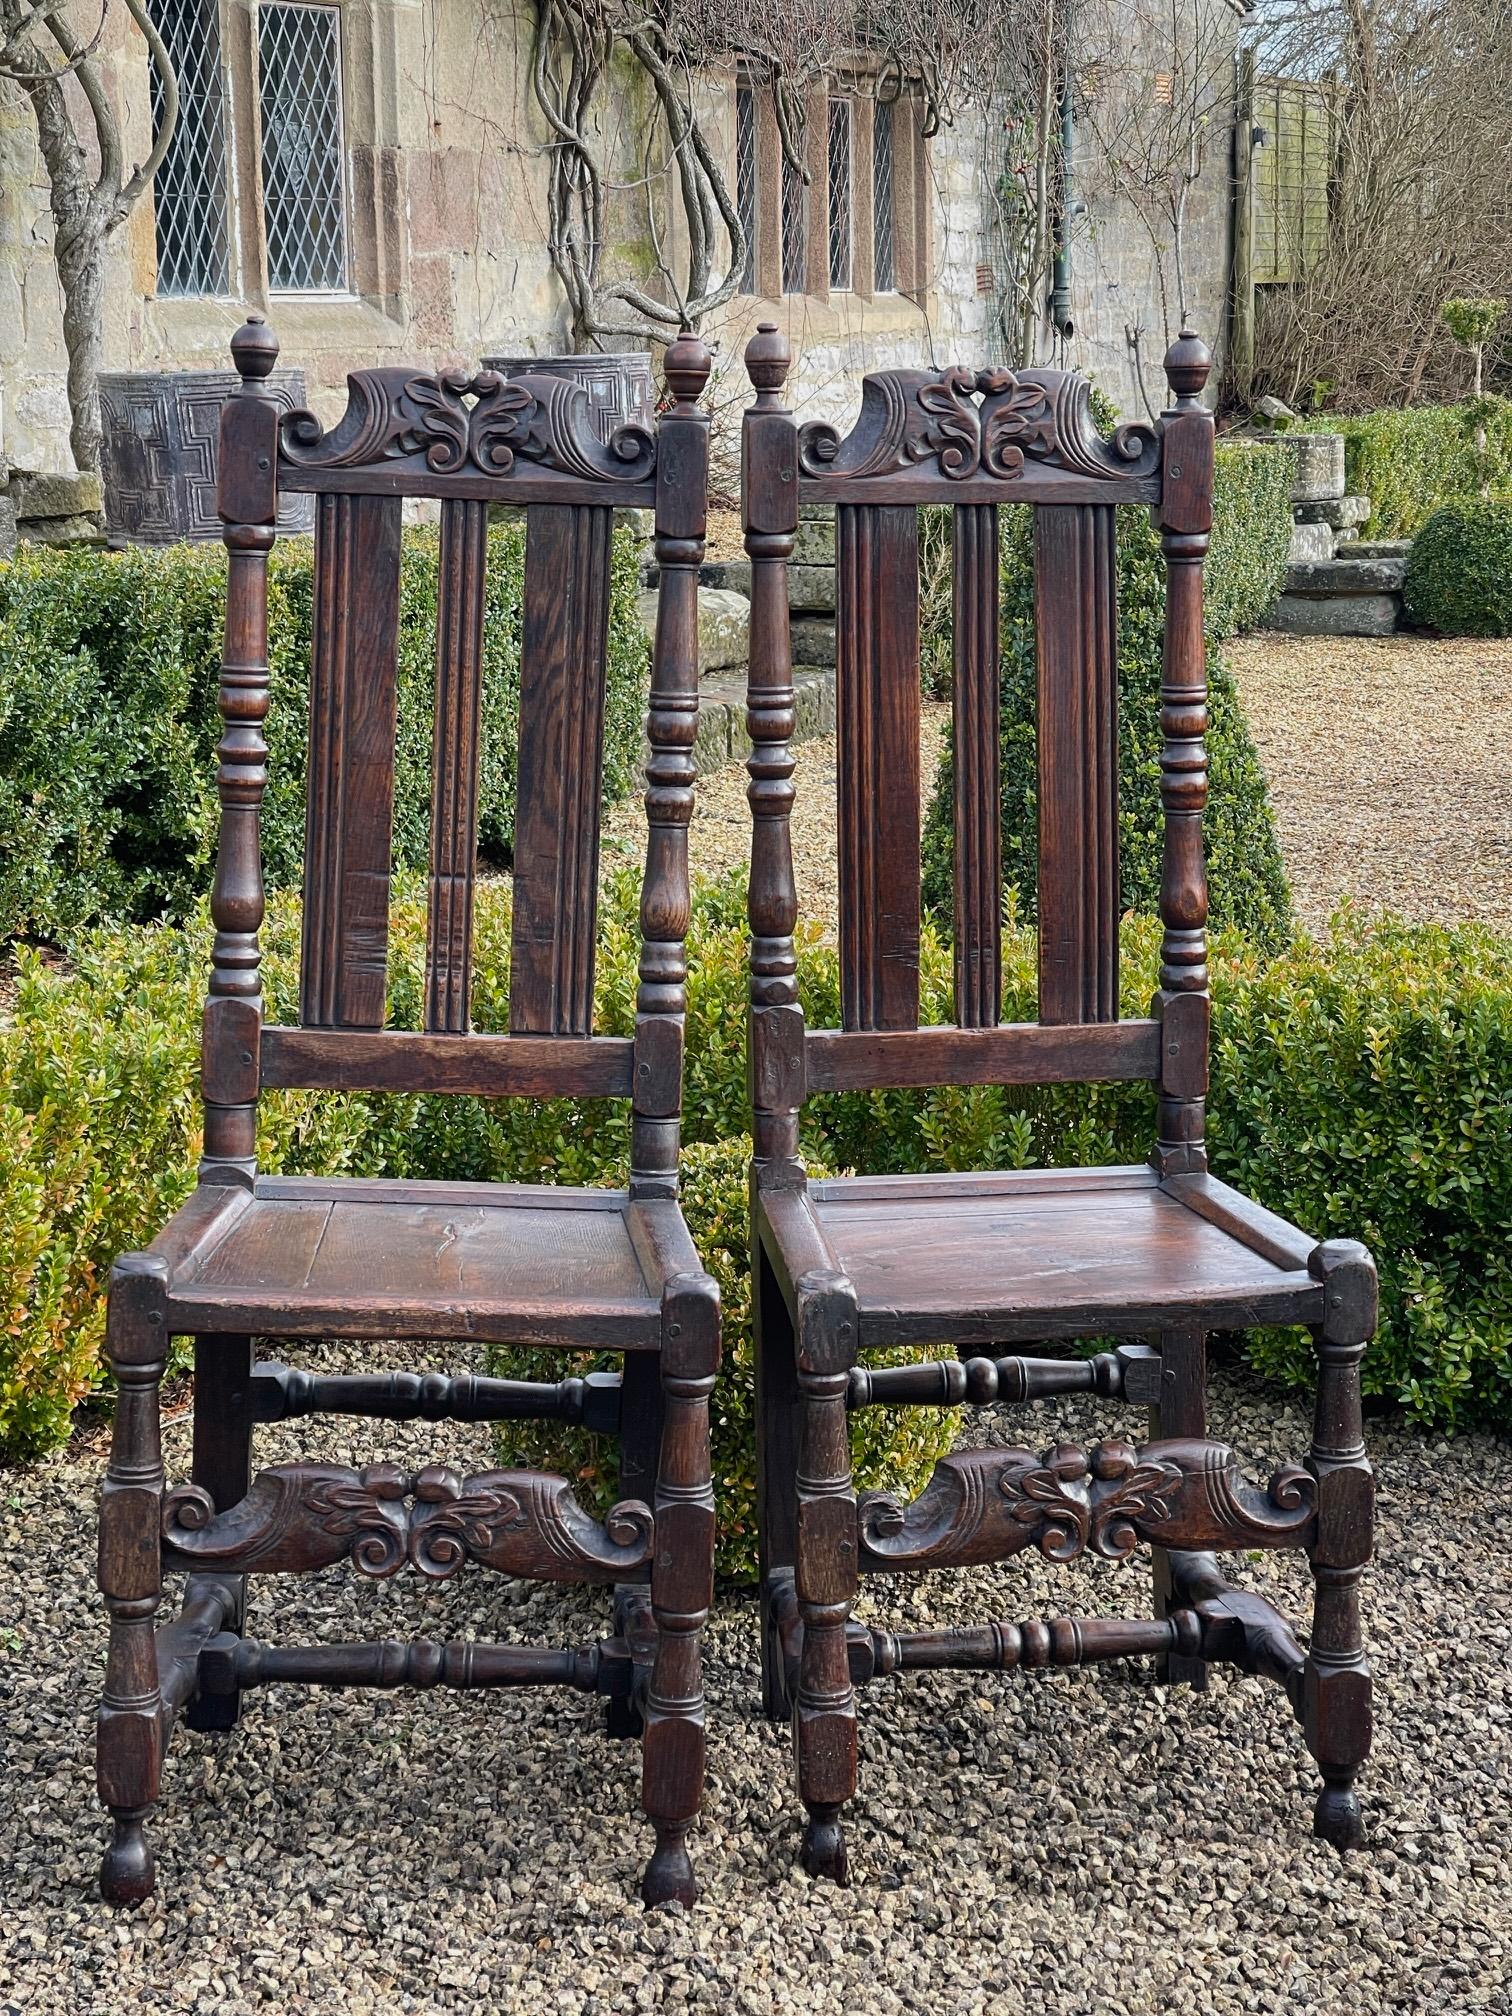 Une belle paire de chaises en chêne du 17ème siècle avec des rails en forme de crête et des extensions frontales, le tout en bonne couleur et patine.

120 cm de haut 45 cm de large siège 49 cm